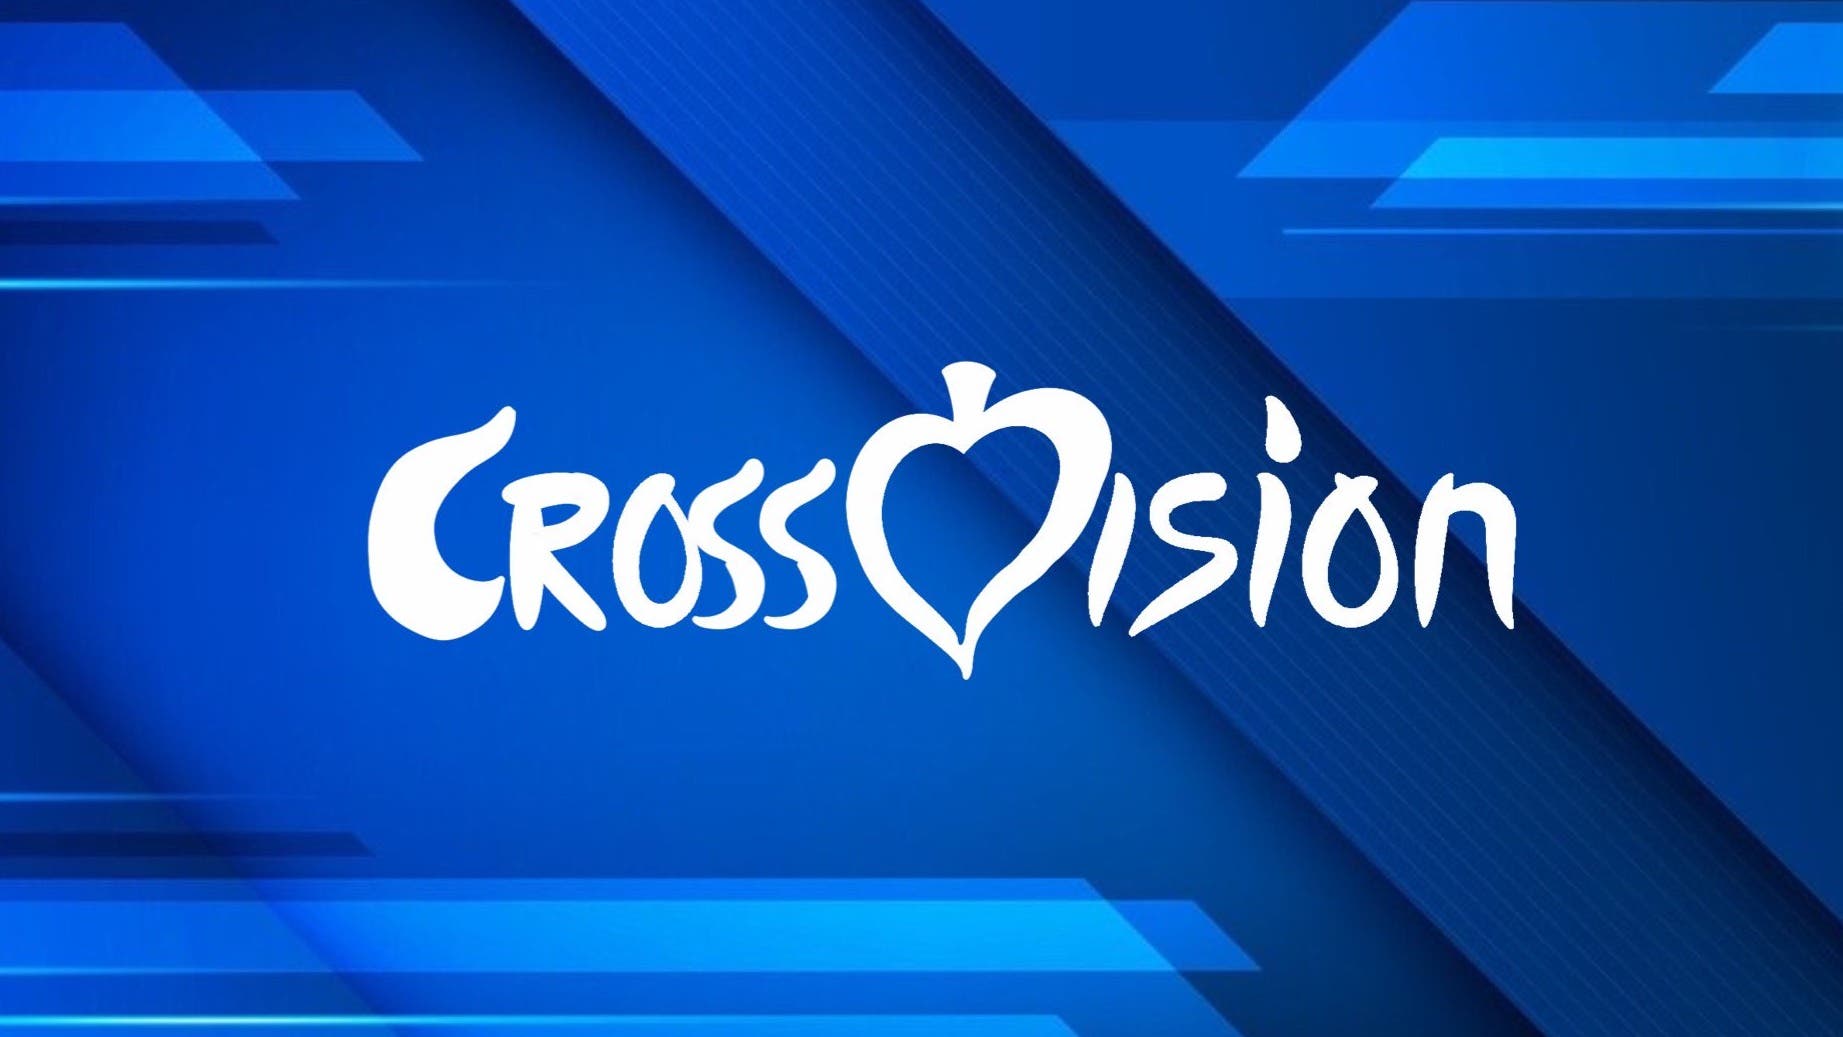 La comunidad española de Animal Crossing prepara su propio Eurovision